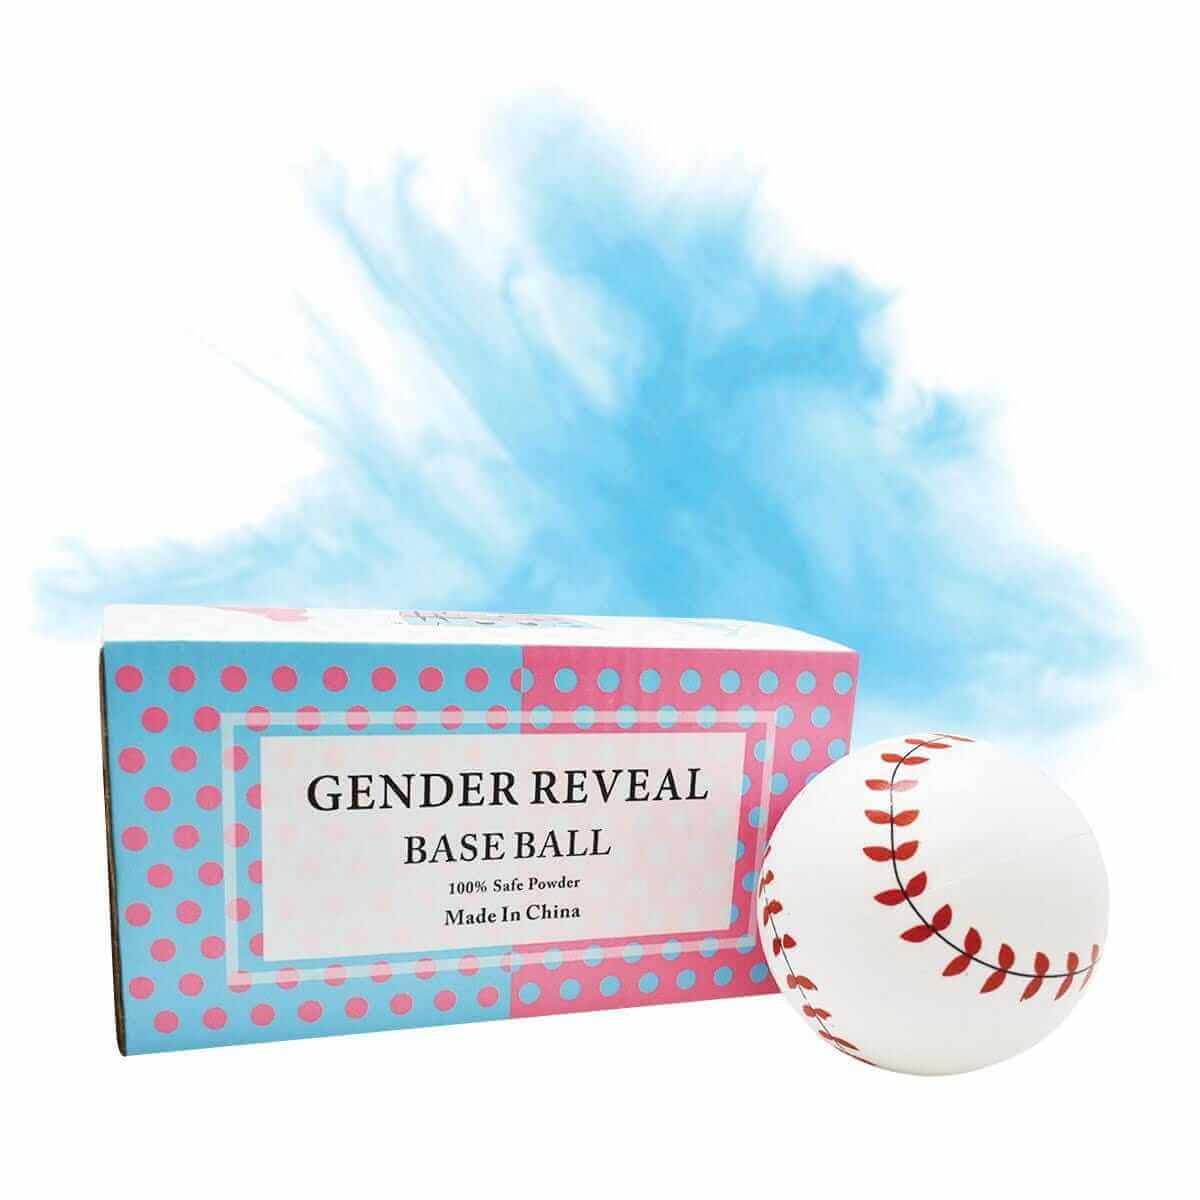 Gender Reveal Powder Baseball - Blue